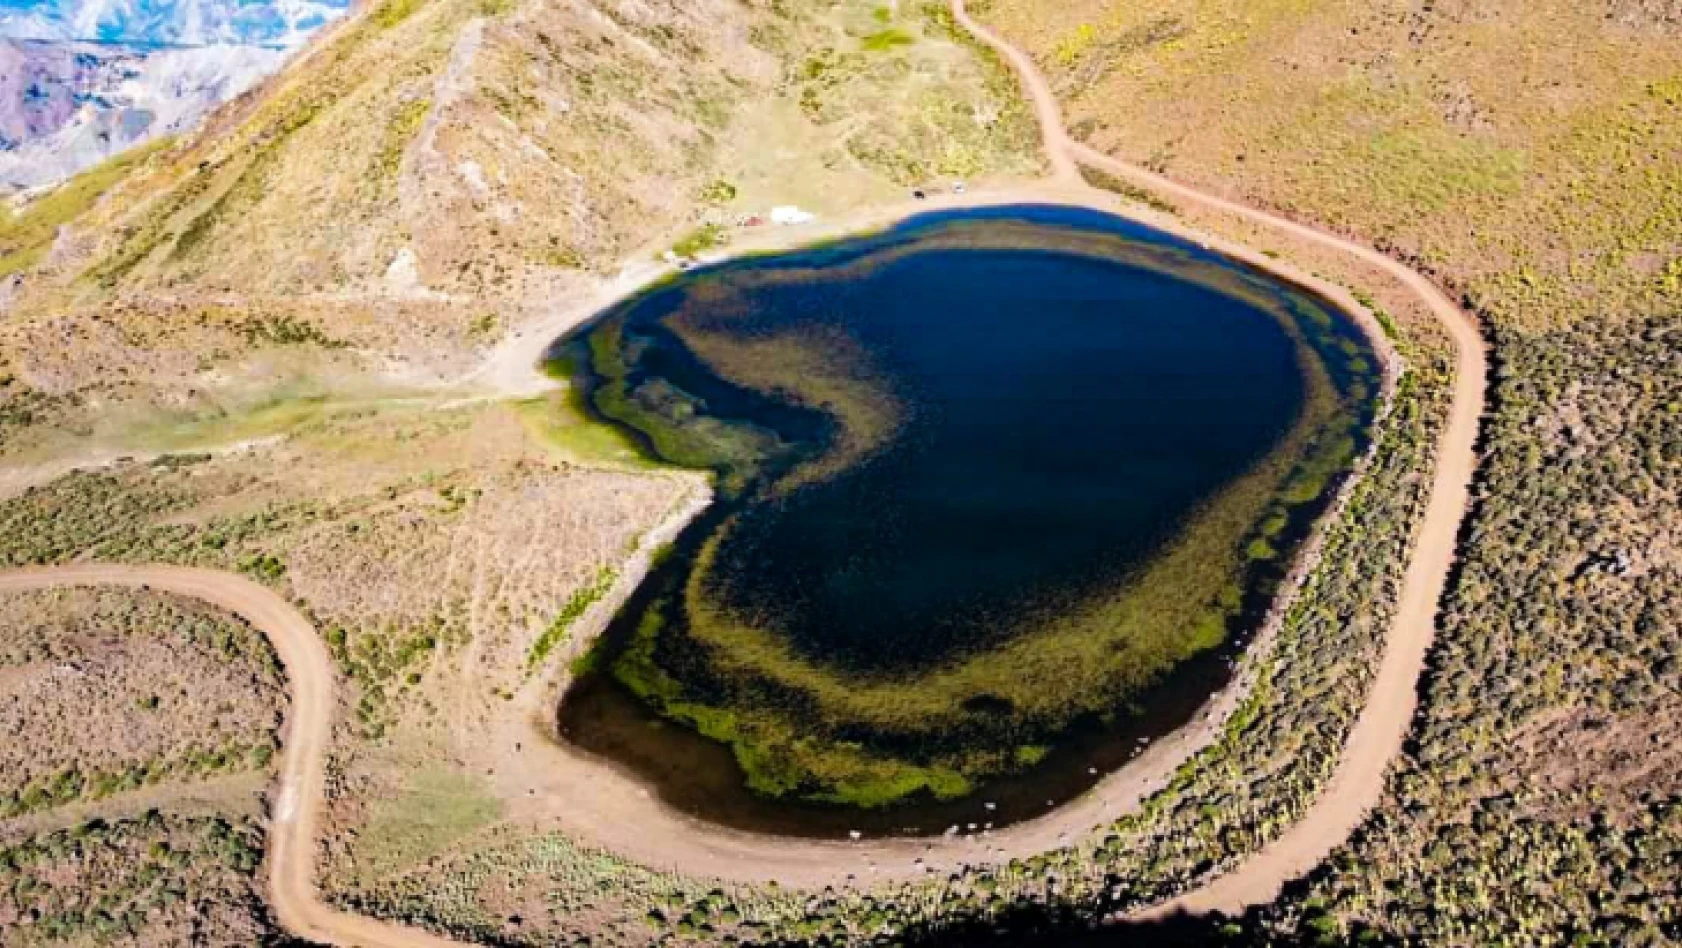 Kalp şeklindeki Gerendal gölü büyük ilgi görüyor